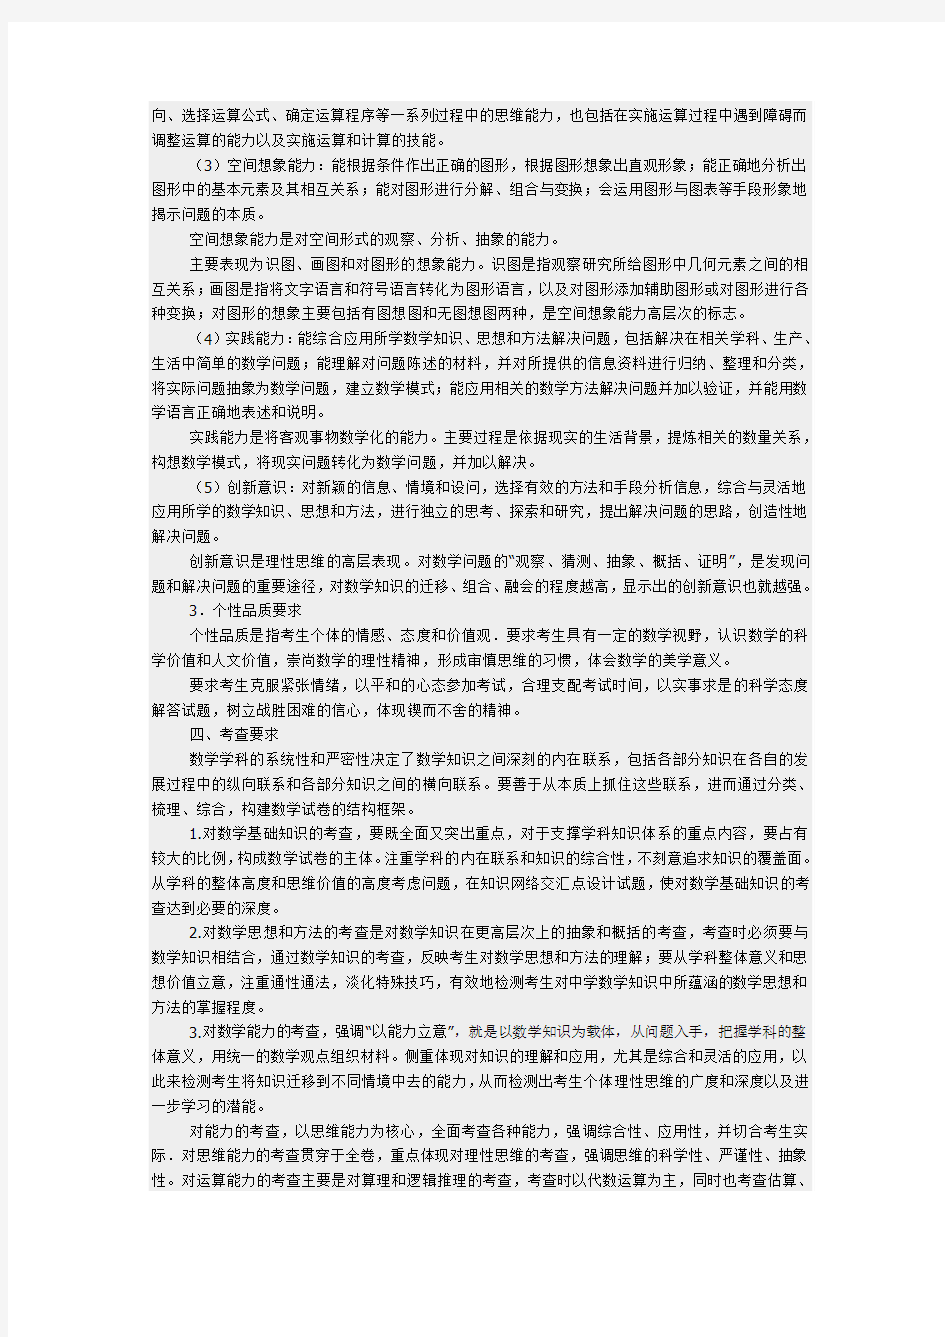 2015年广东交通职业技术学院自主招生考试大纲(普高类)